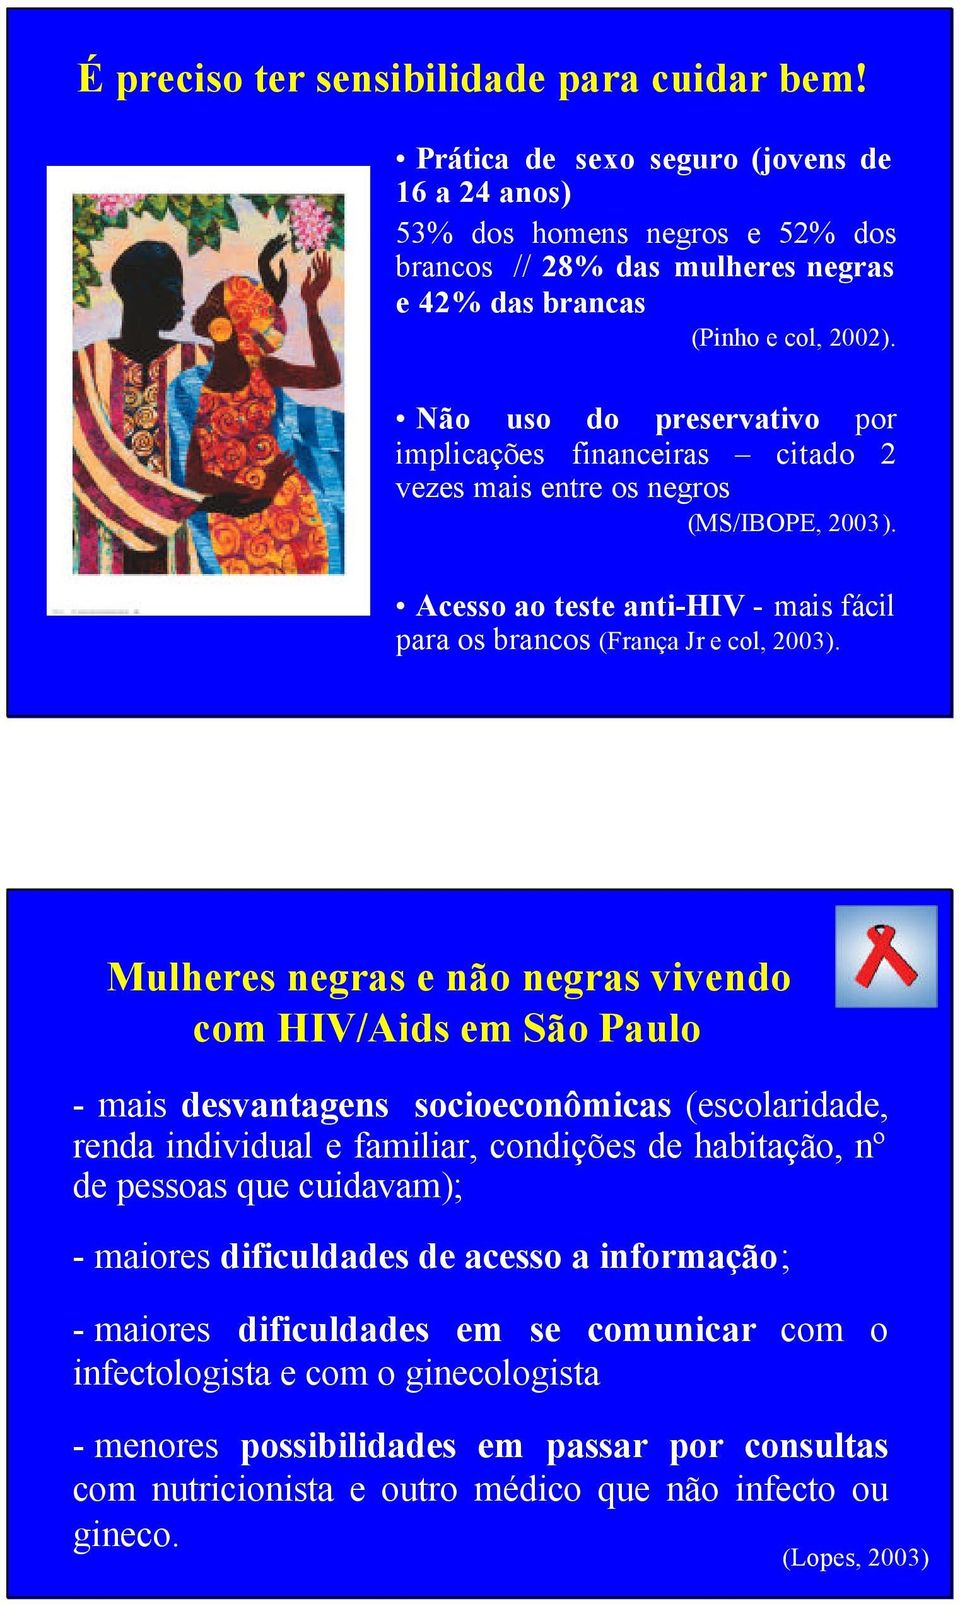 Mulheres negras e não negras vivendo com HIV/Aids em São Paulo - mais desvantagens socioeconômicas (escolaridade, renda individual e familiar, condições de habitação, nº de pessoas que cuidavam); -